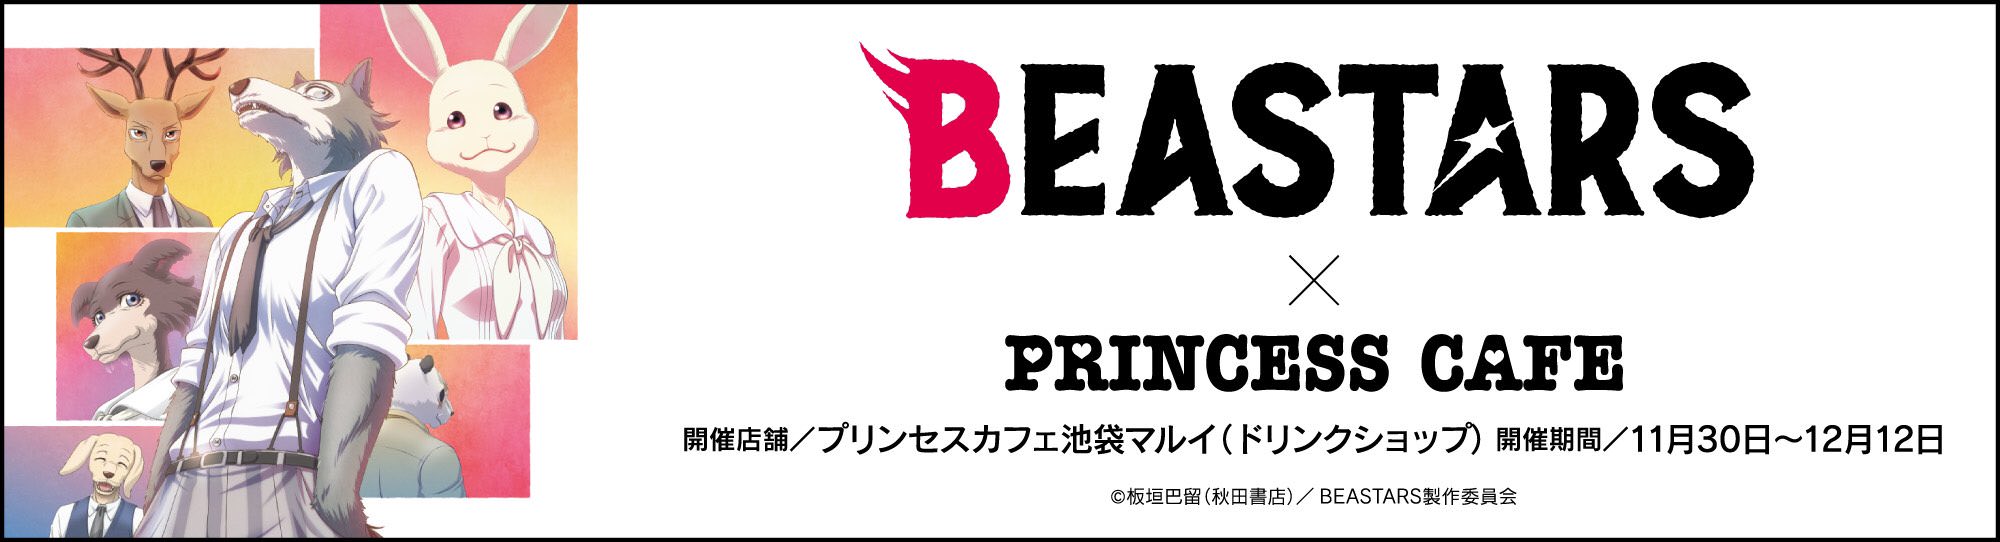 ビースターズ × プリンセスカフェ池袋マルイ 11.30-12.12 コラボ追加開催!!